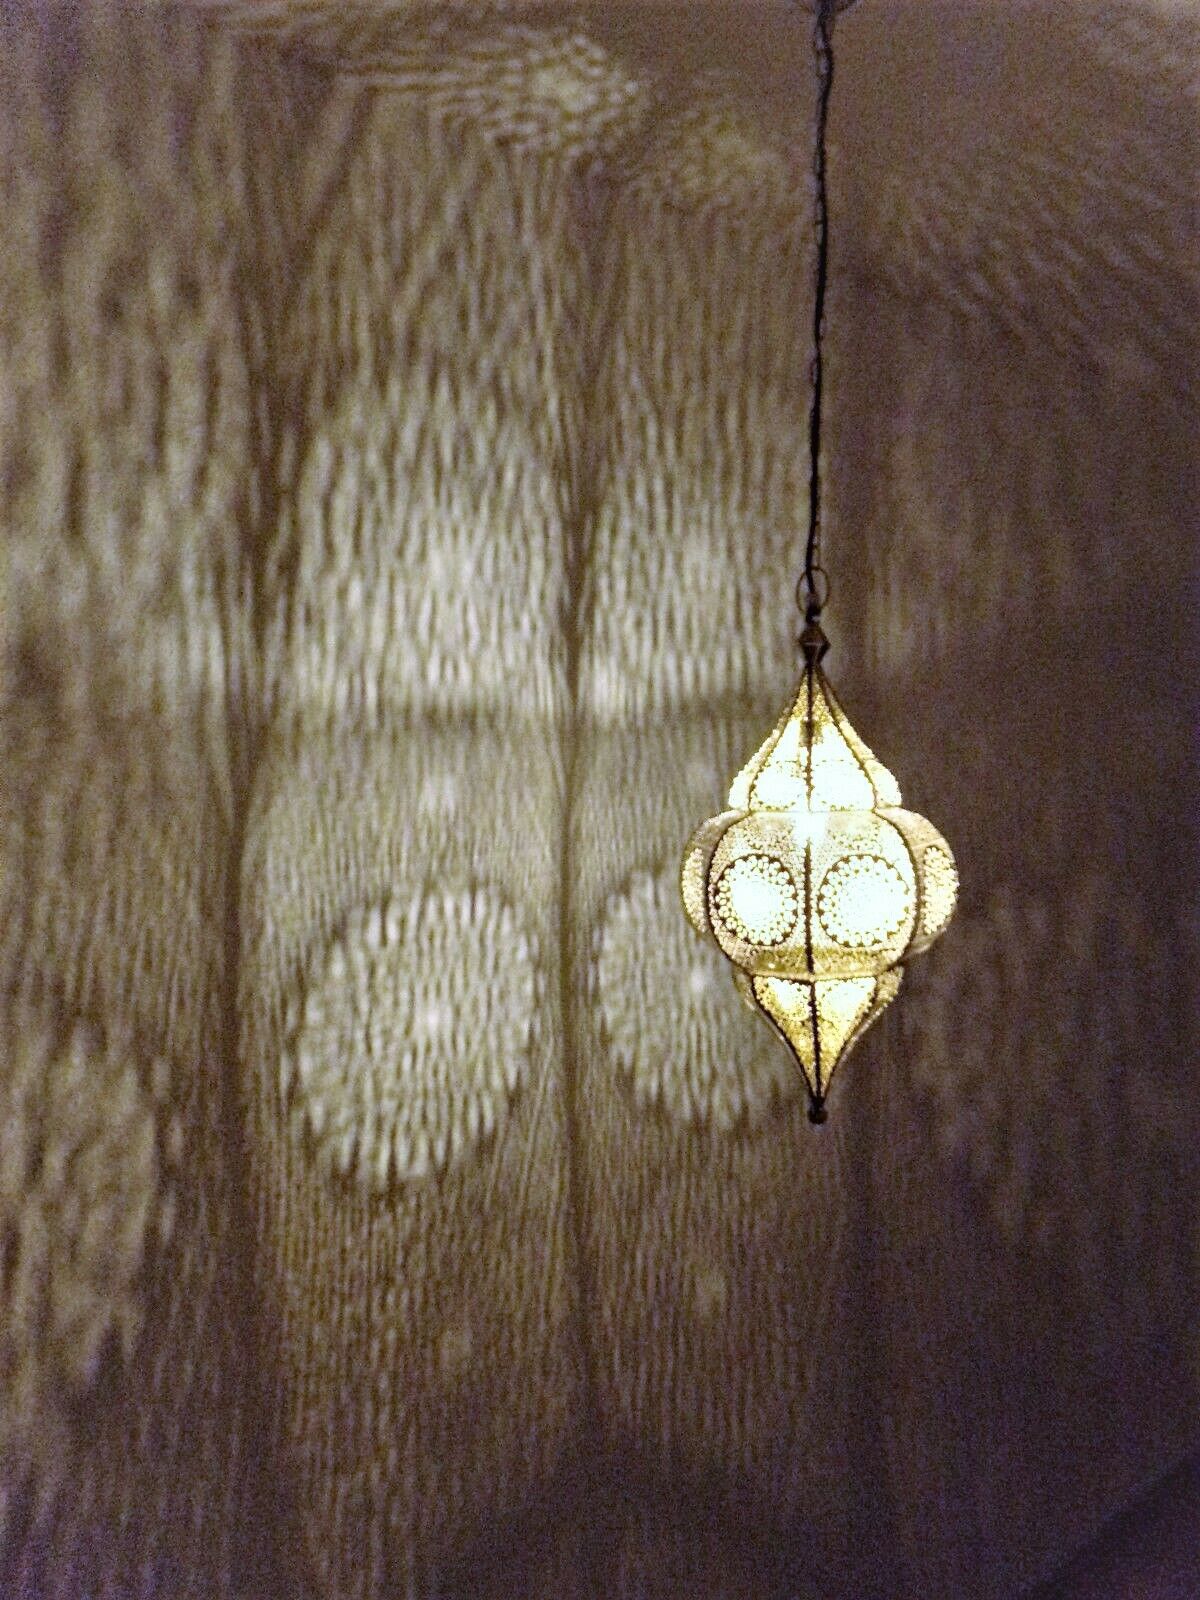 Orientalische Lampe Pendelleuchte Design Weiss Gold 